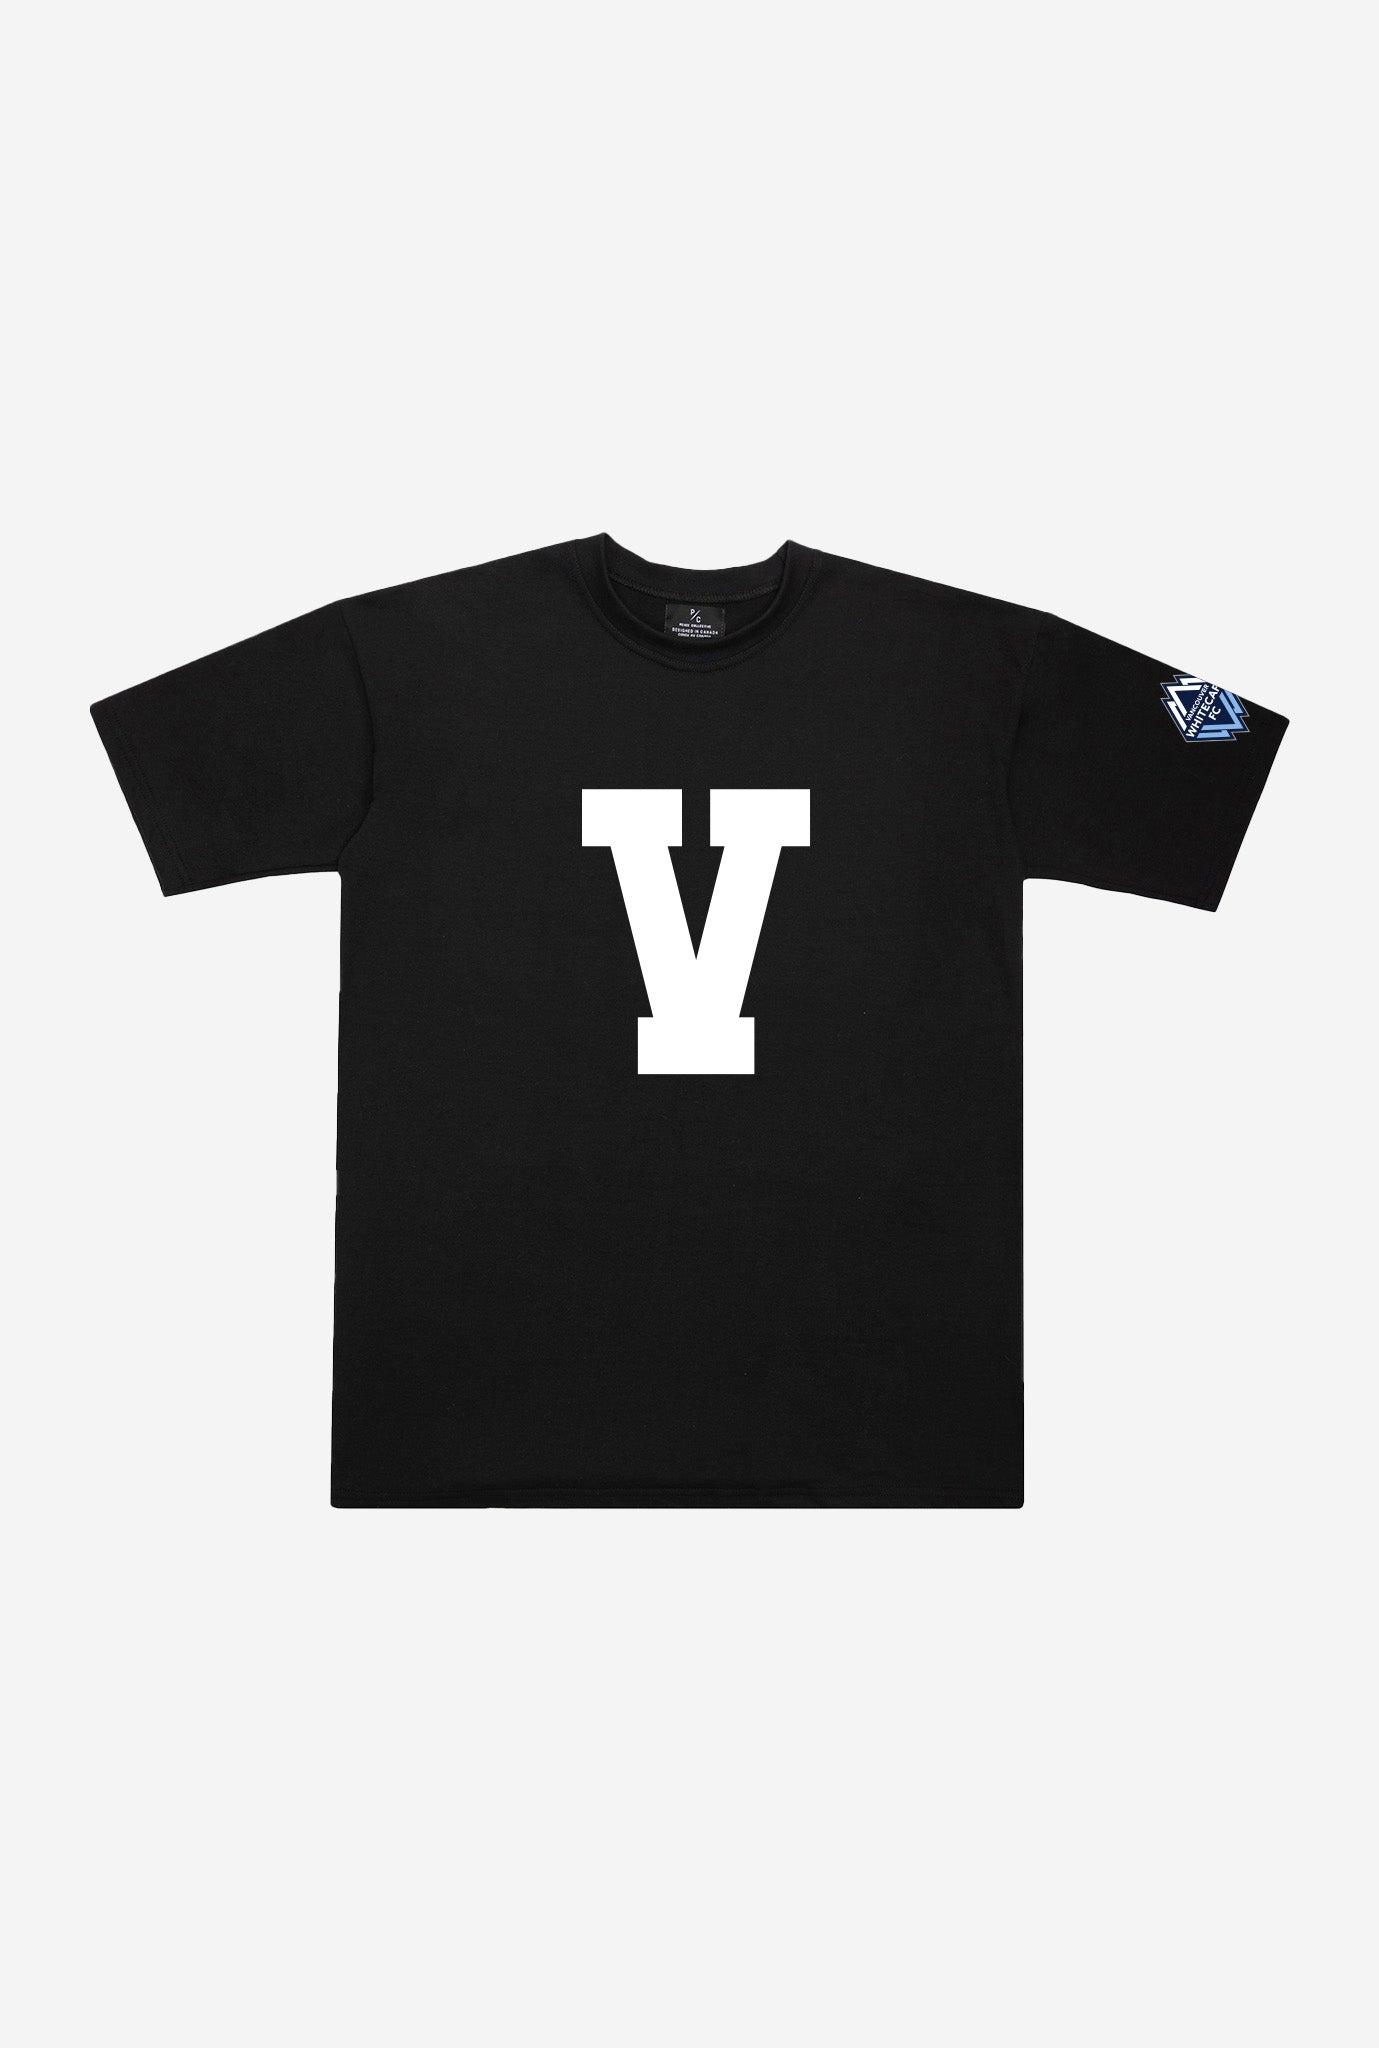 Vancouver FC "V" Heavyweight T-Shirt - Black